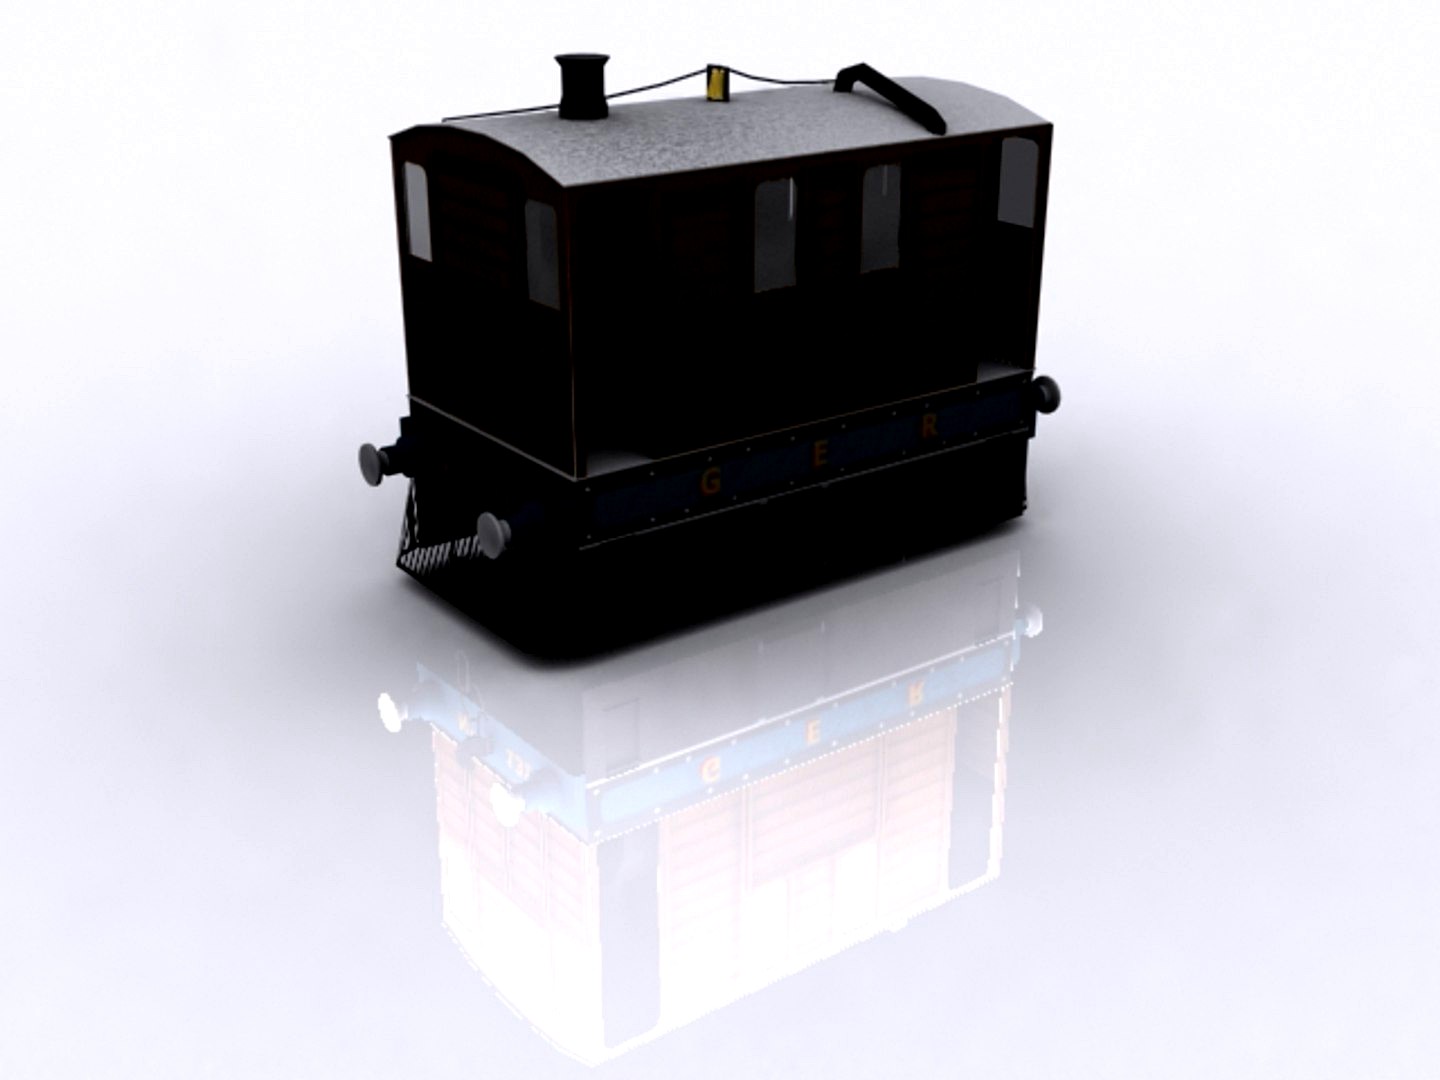 Steam Tram